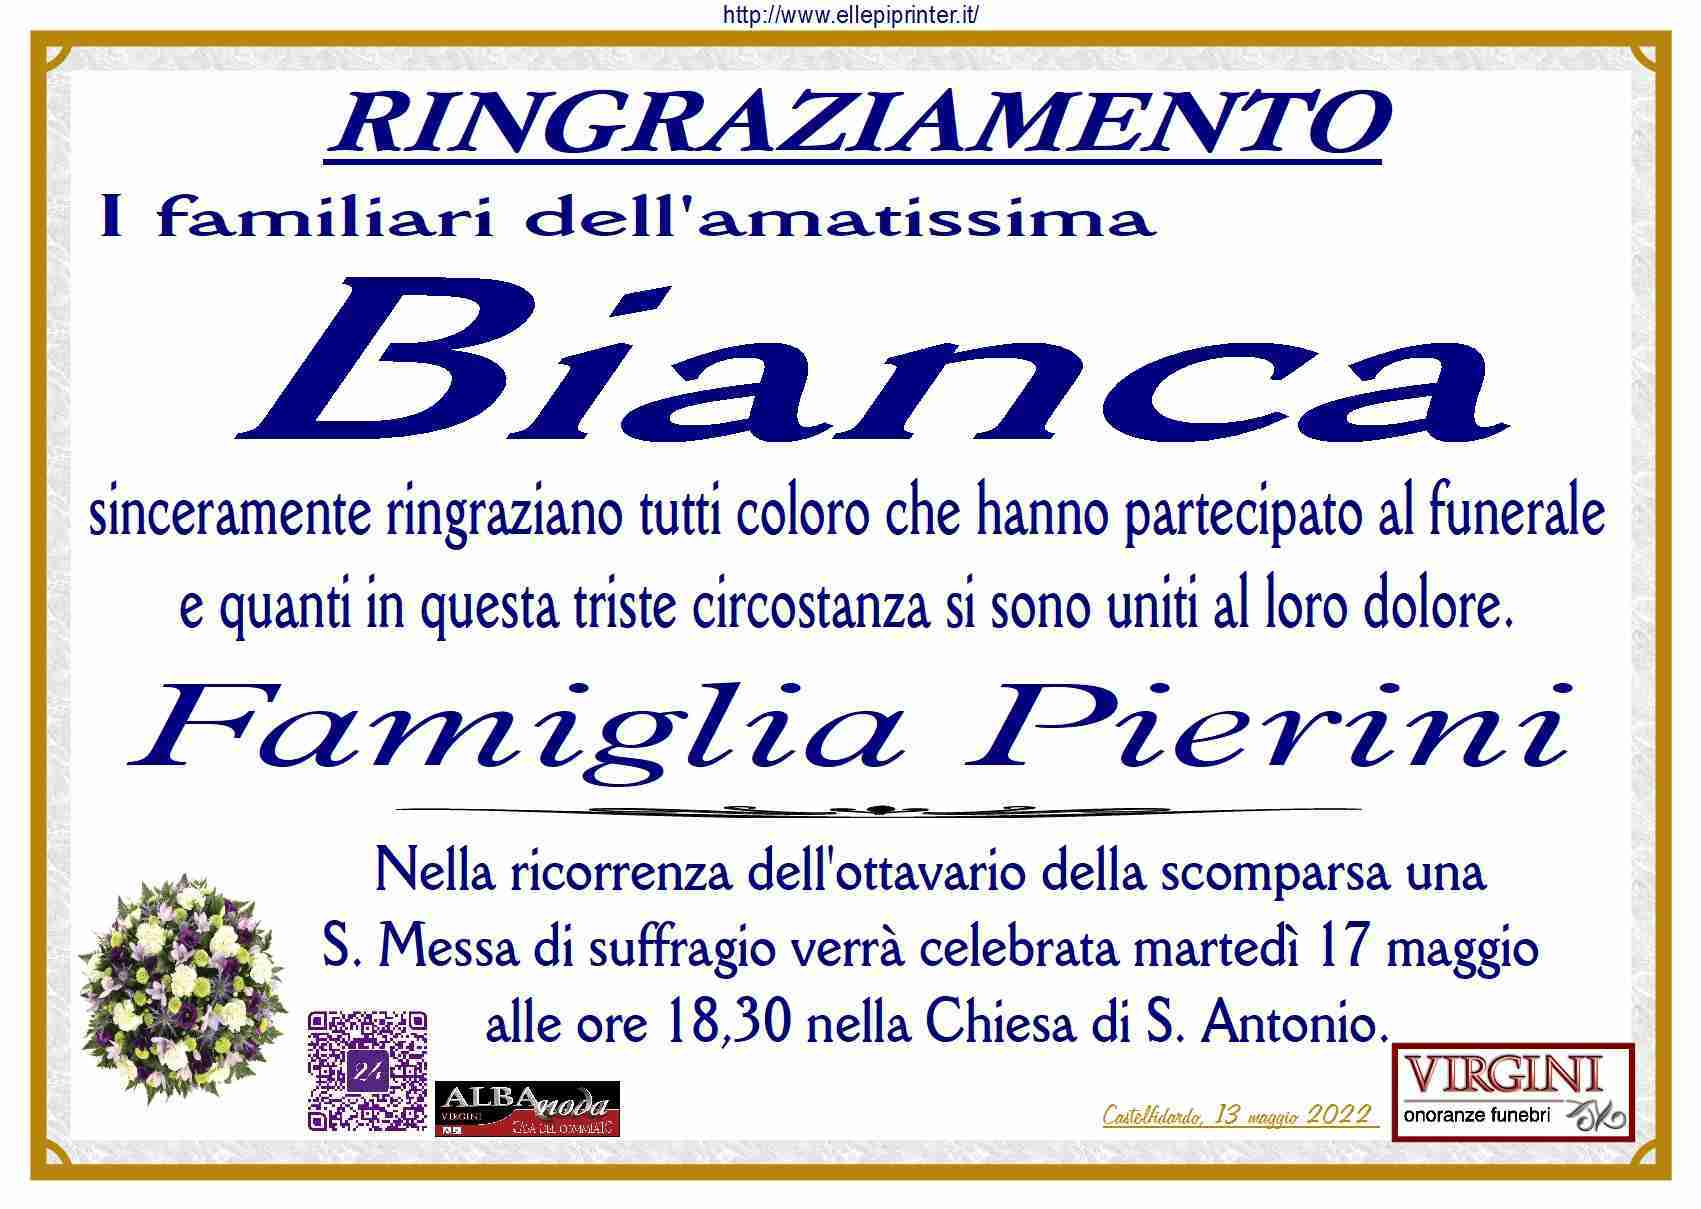 Bianca Pierini